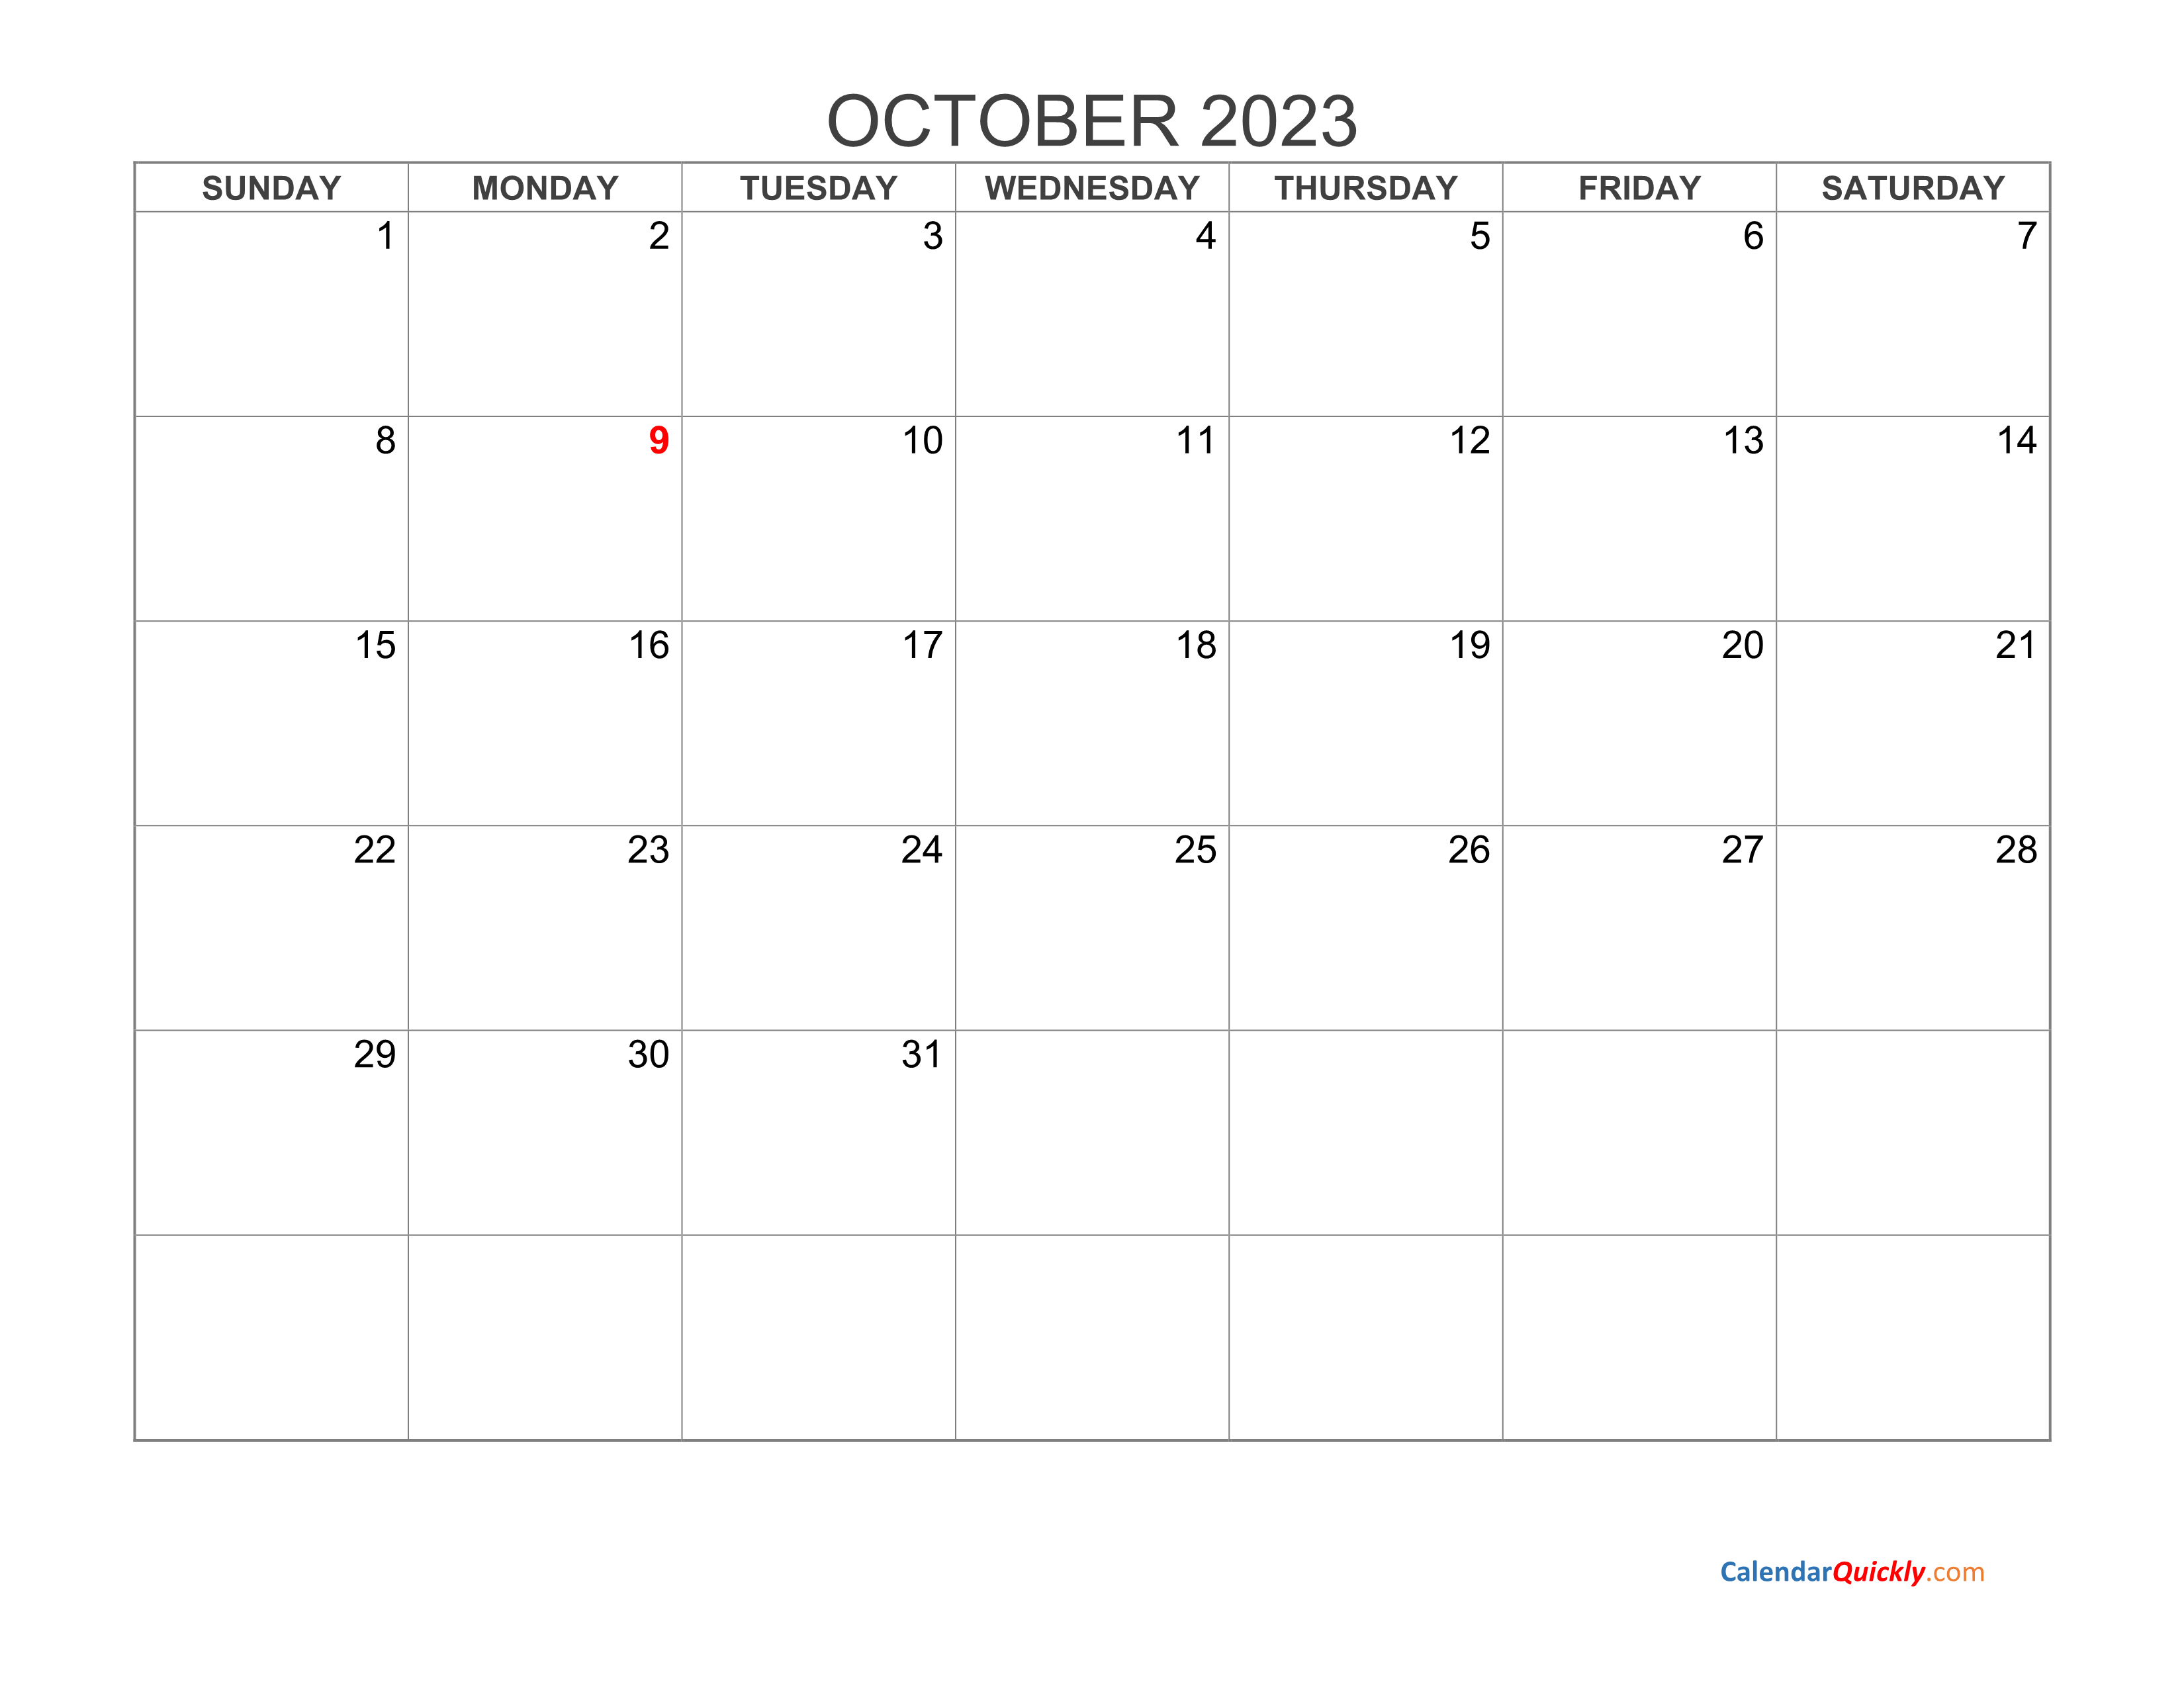 october-2023-calendar-free-printable-calendar-october-2023-free-calendar-template-calendar